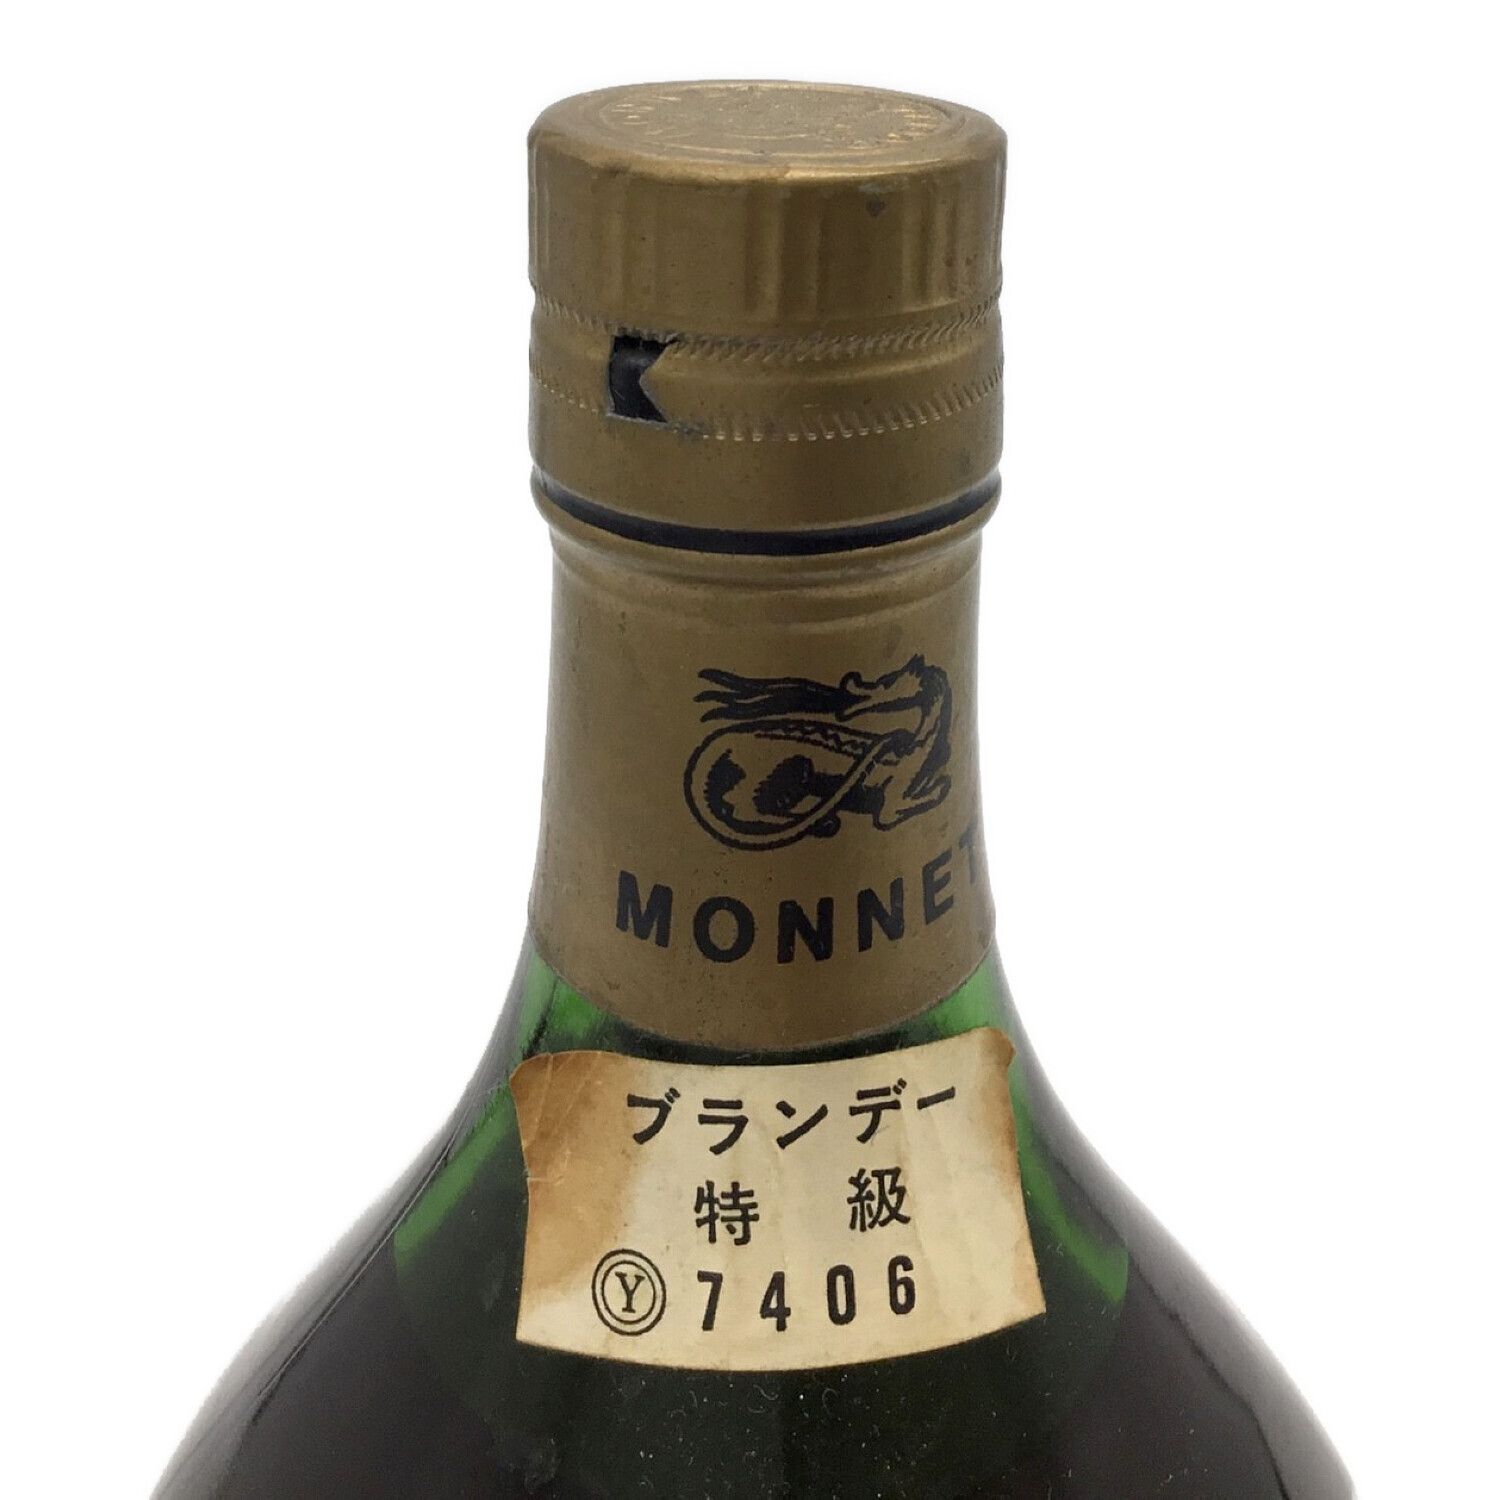 MONNET (モネ) コニャック 700ml j.g. monnet v.s.o.p fine cognac 未 